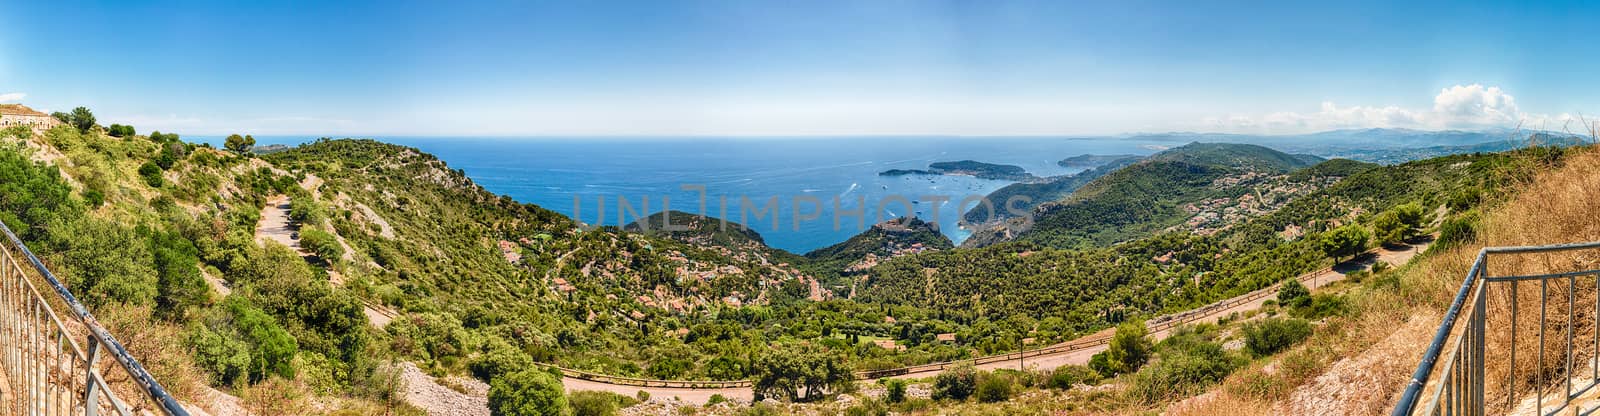 Landscape view over the French Riviera coastline, Cote d'Azur, F by marcorubino